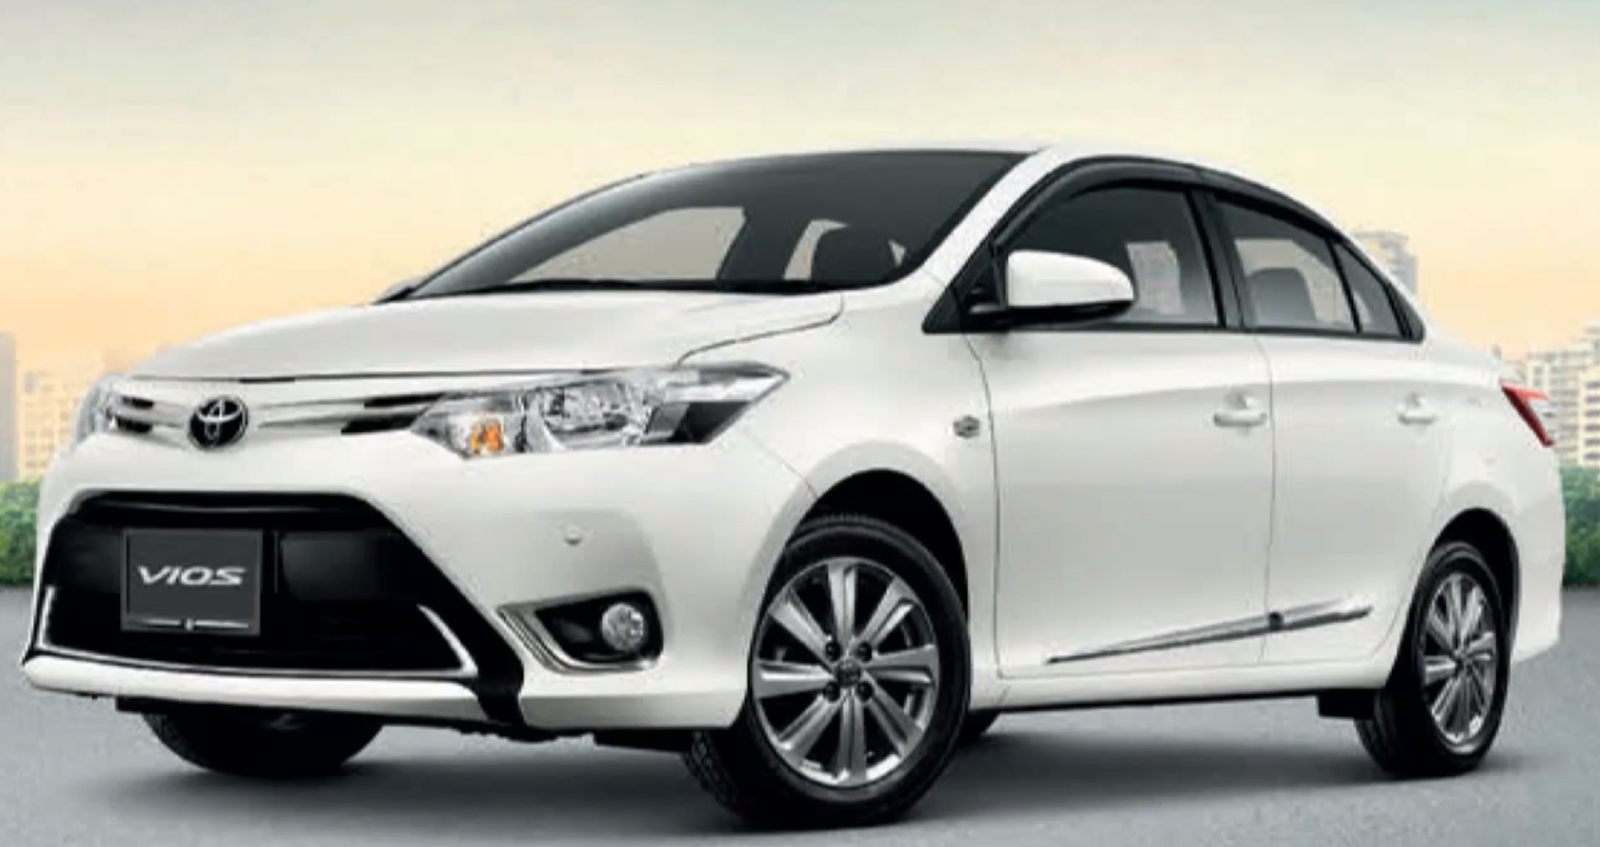 Daftar Harga Mobil  Toyota  Vios  Baru Dan Bekas  Terbaru 2021 